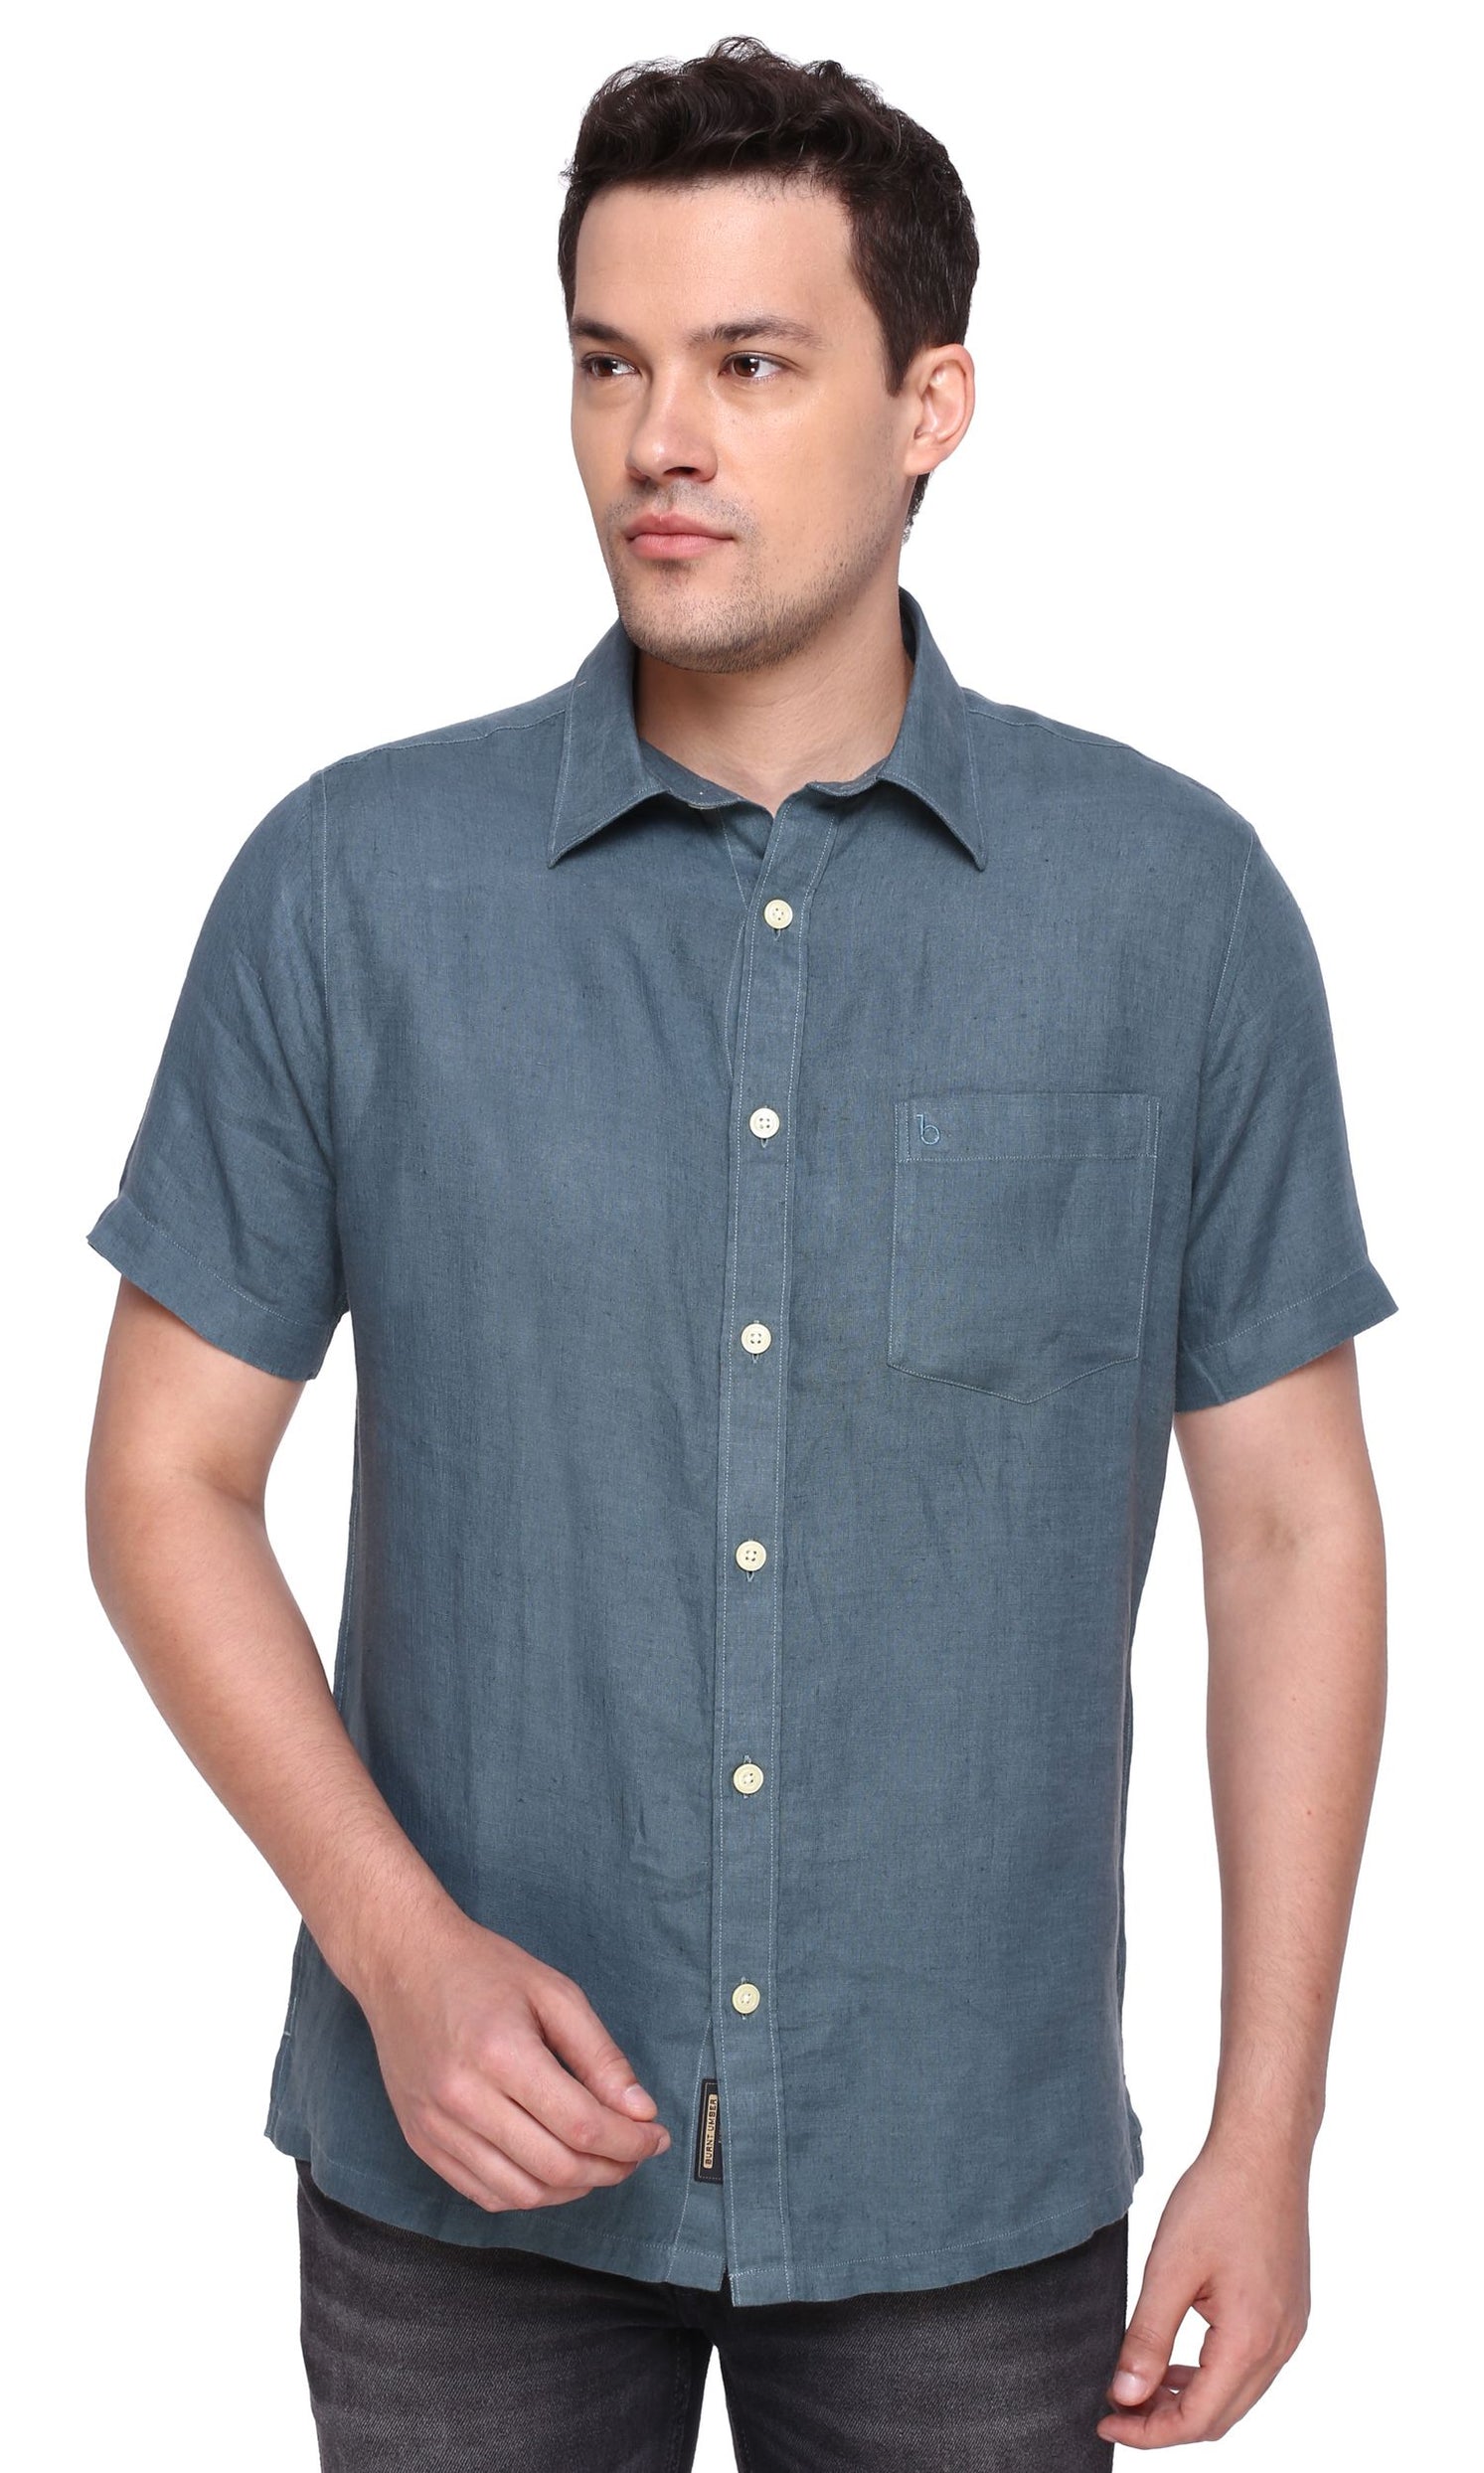 Teal Half Sleeve Linen Shirt – Burnt Umber - Premium Men's Smart Casual ...